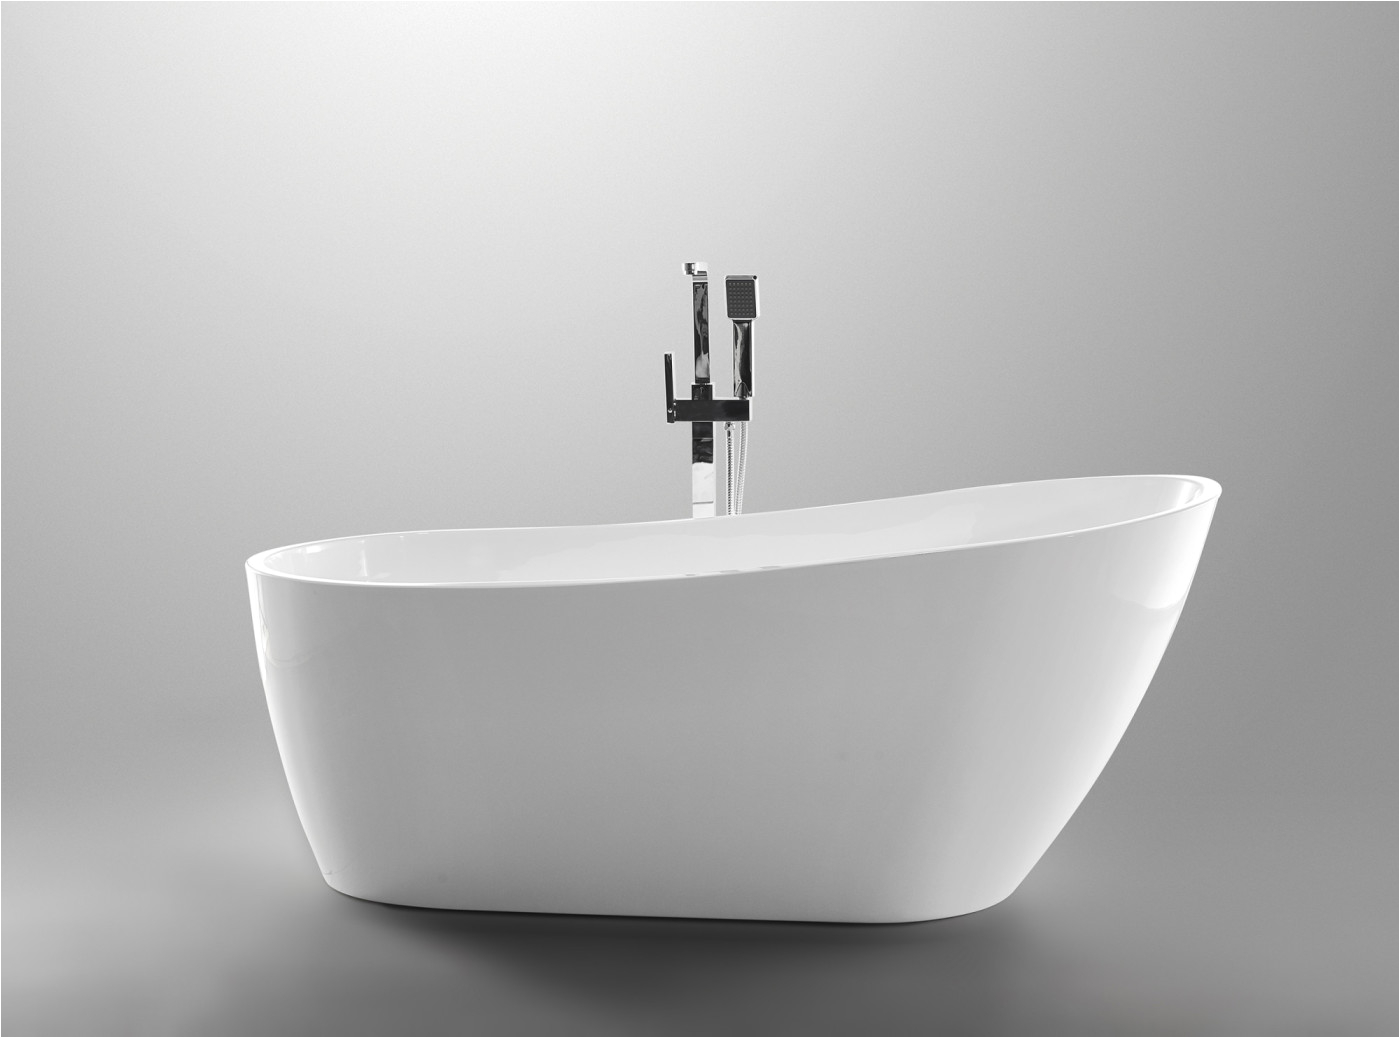 5 Ft Freestanding Bathtub Trend Series 5 58 Ft Freestanding Bathtub In White